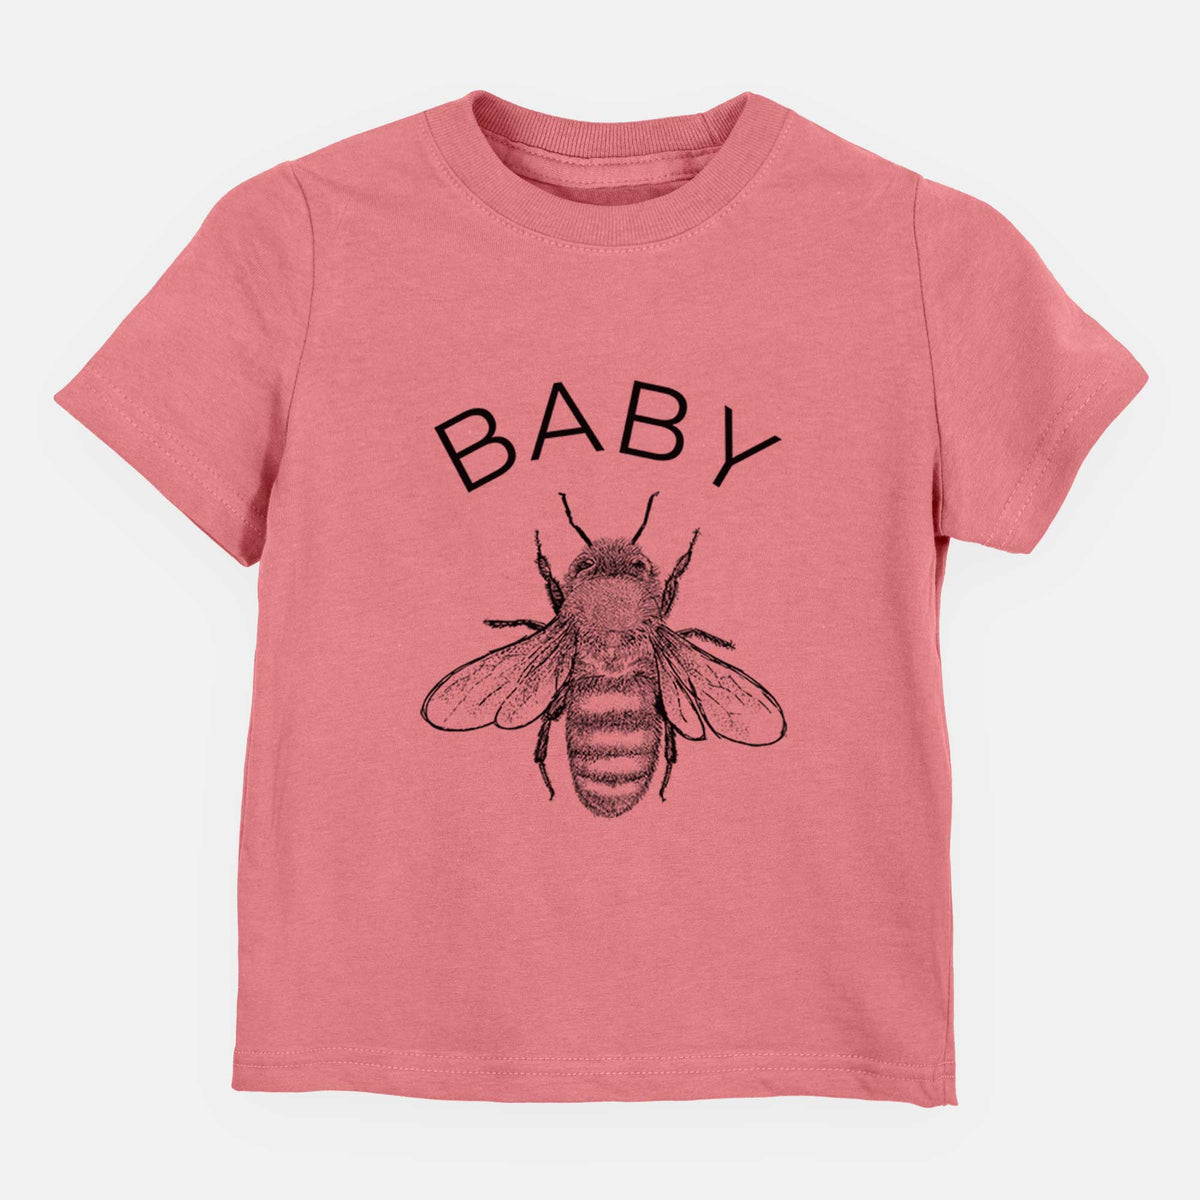 Baby Bee - Kids Shirt